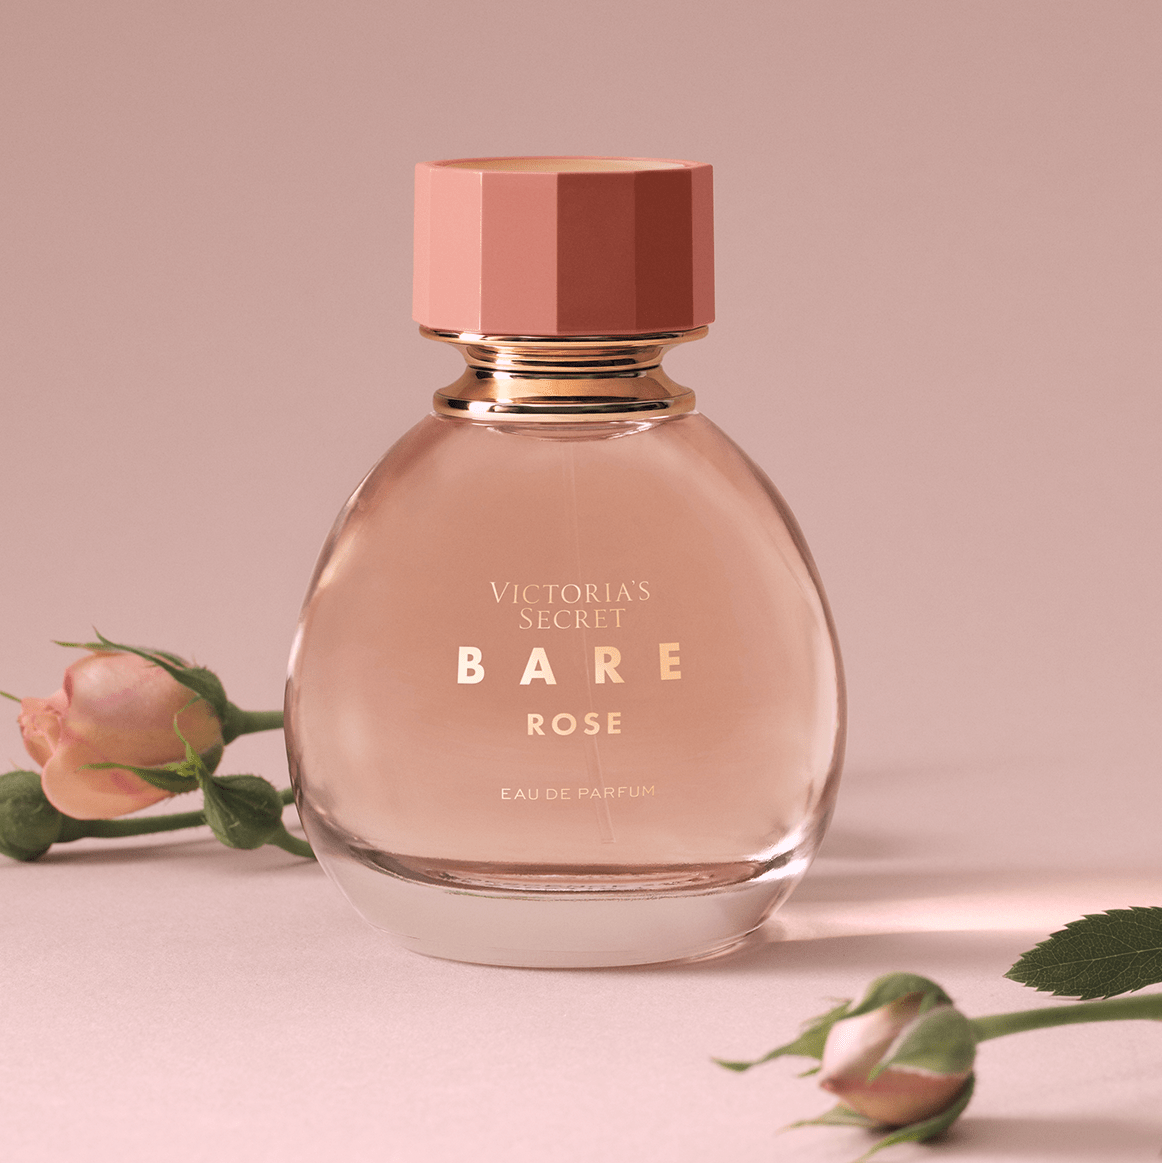 Victoria’s Secret: Bare Rose Eau de Parfum